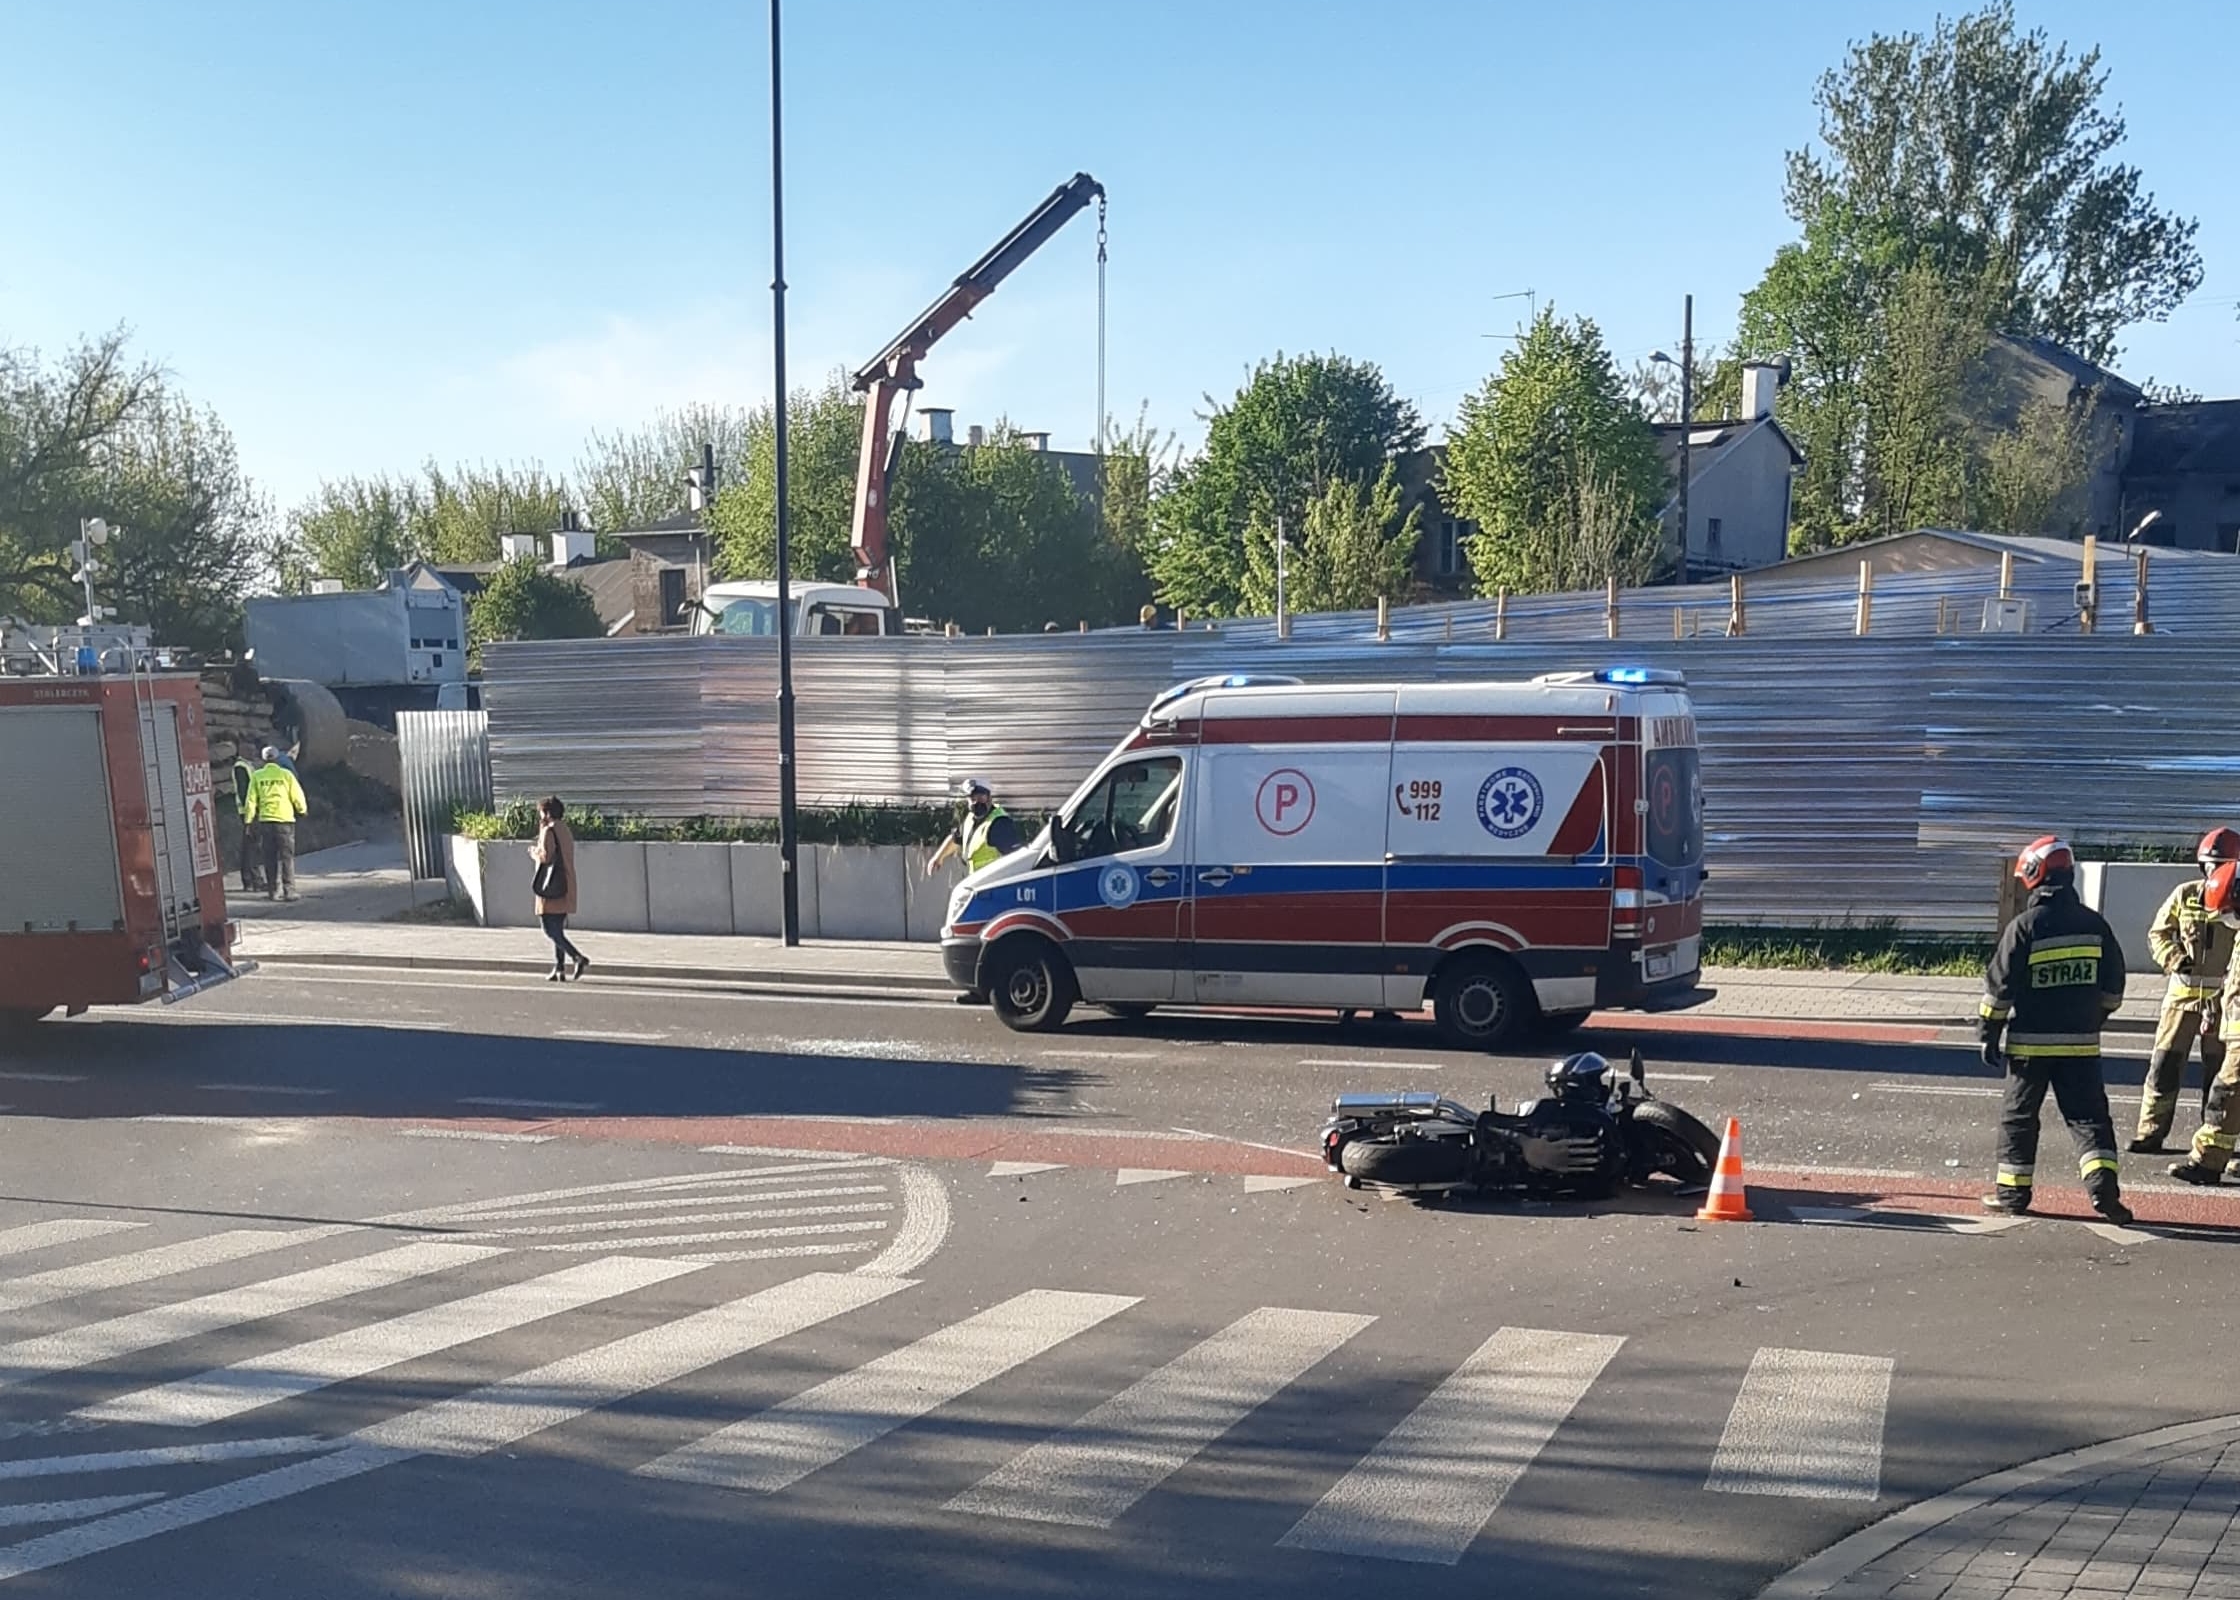 Po wypadku z udziałem motocyklisty zablokowana ul. Kalinowszczyzna (zdjęcia)